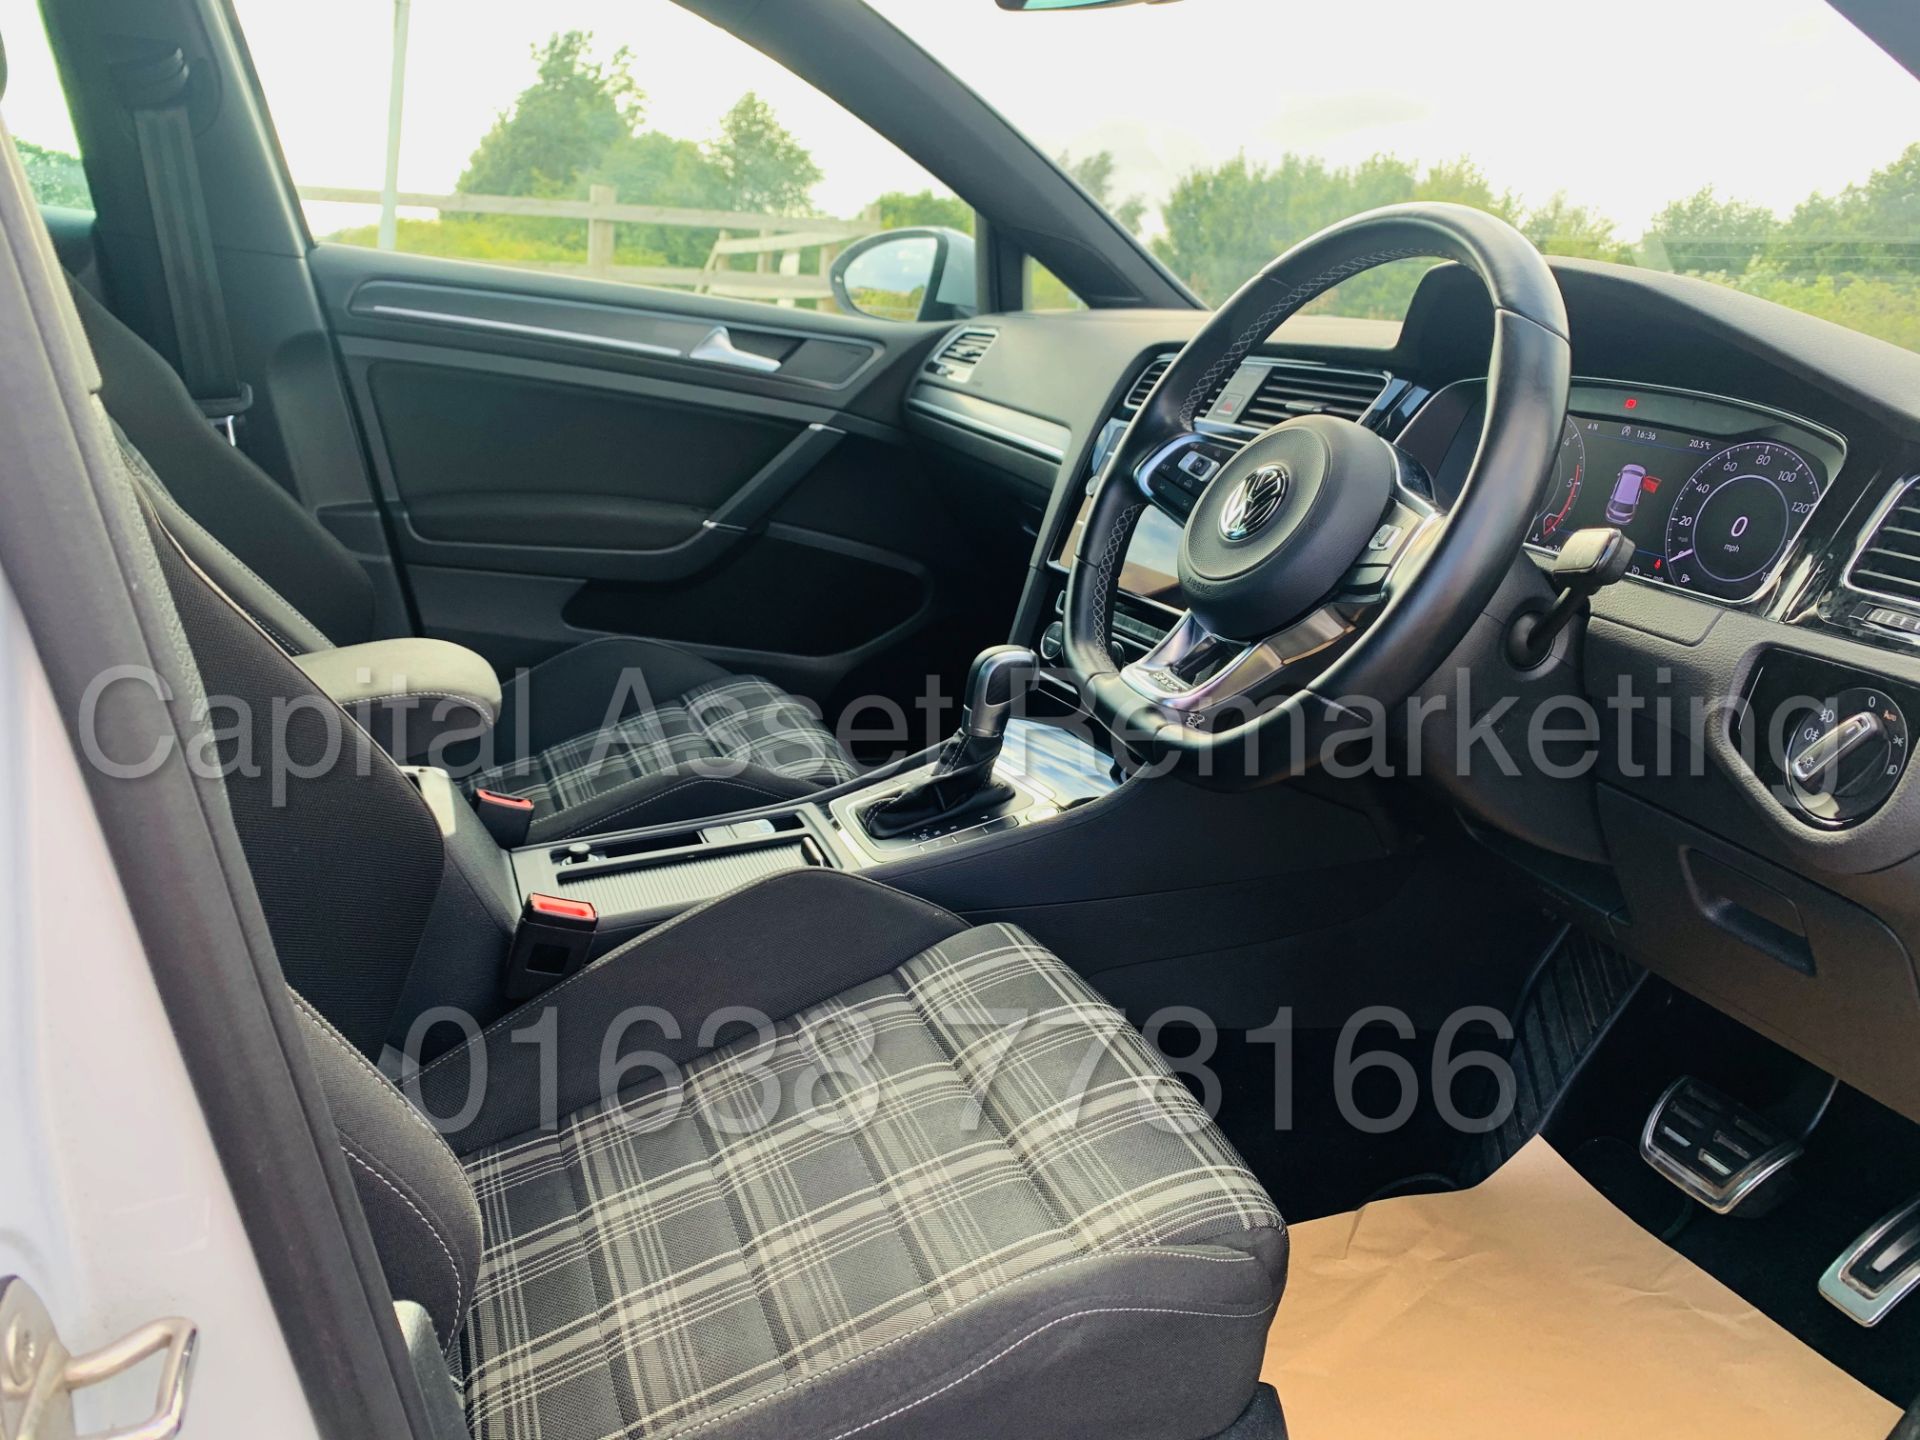 (On Sale) VOLKSWAGEN GOLF *GTD EDITION* 5 DOOR (2018 - NEW MODEL) '2.0 TDI - 184 BHP - AUTO DSG' - Image 45 of 56